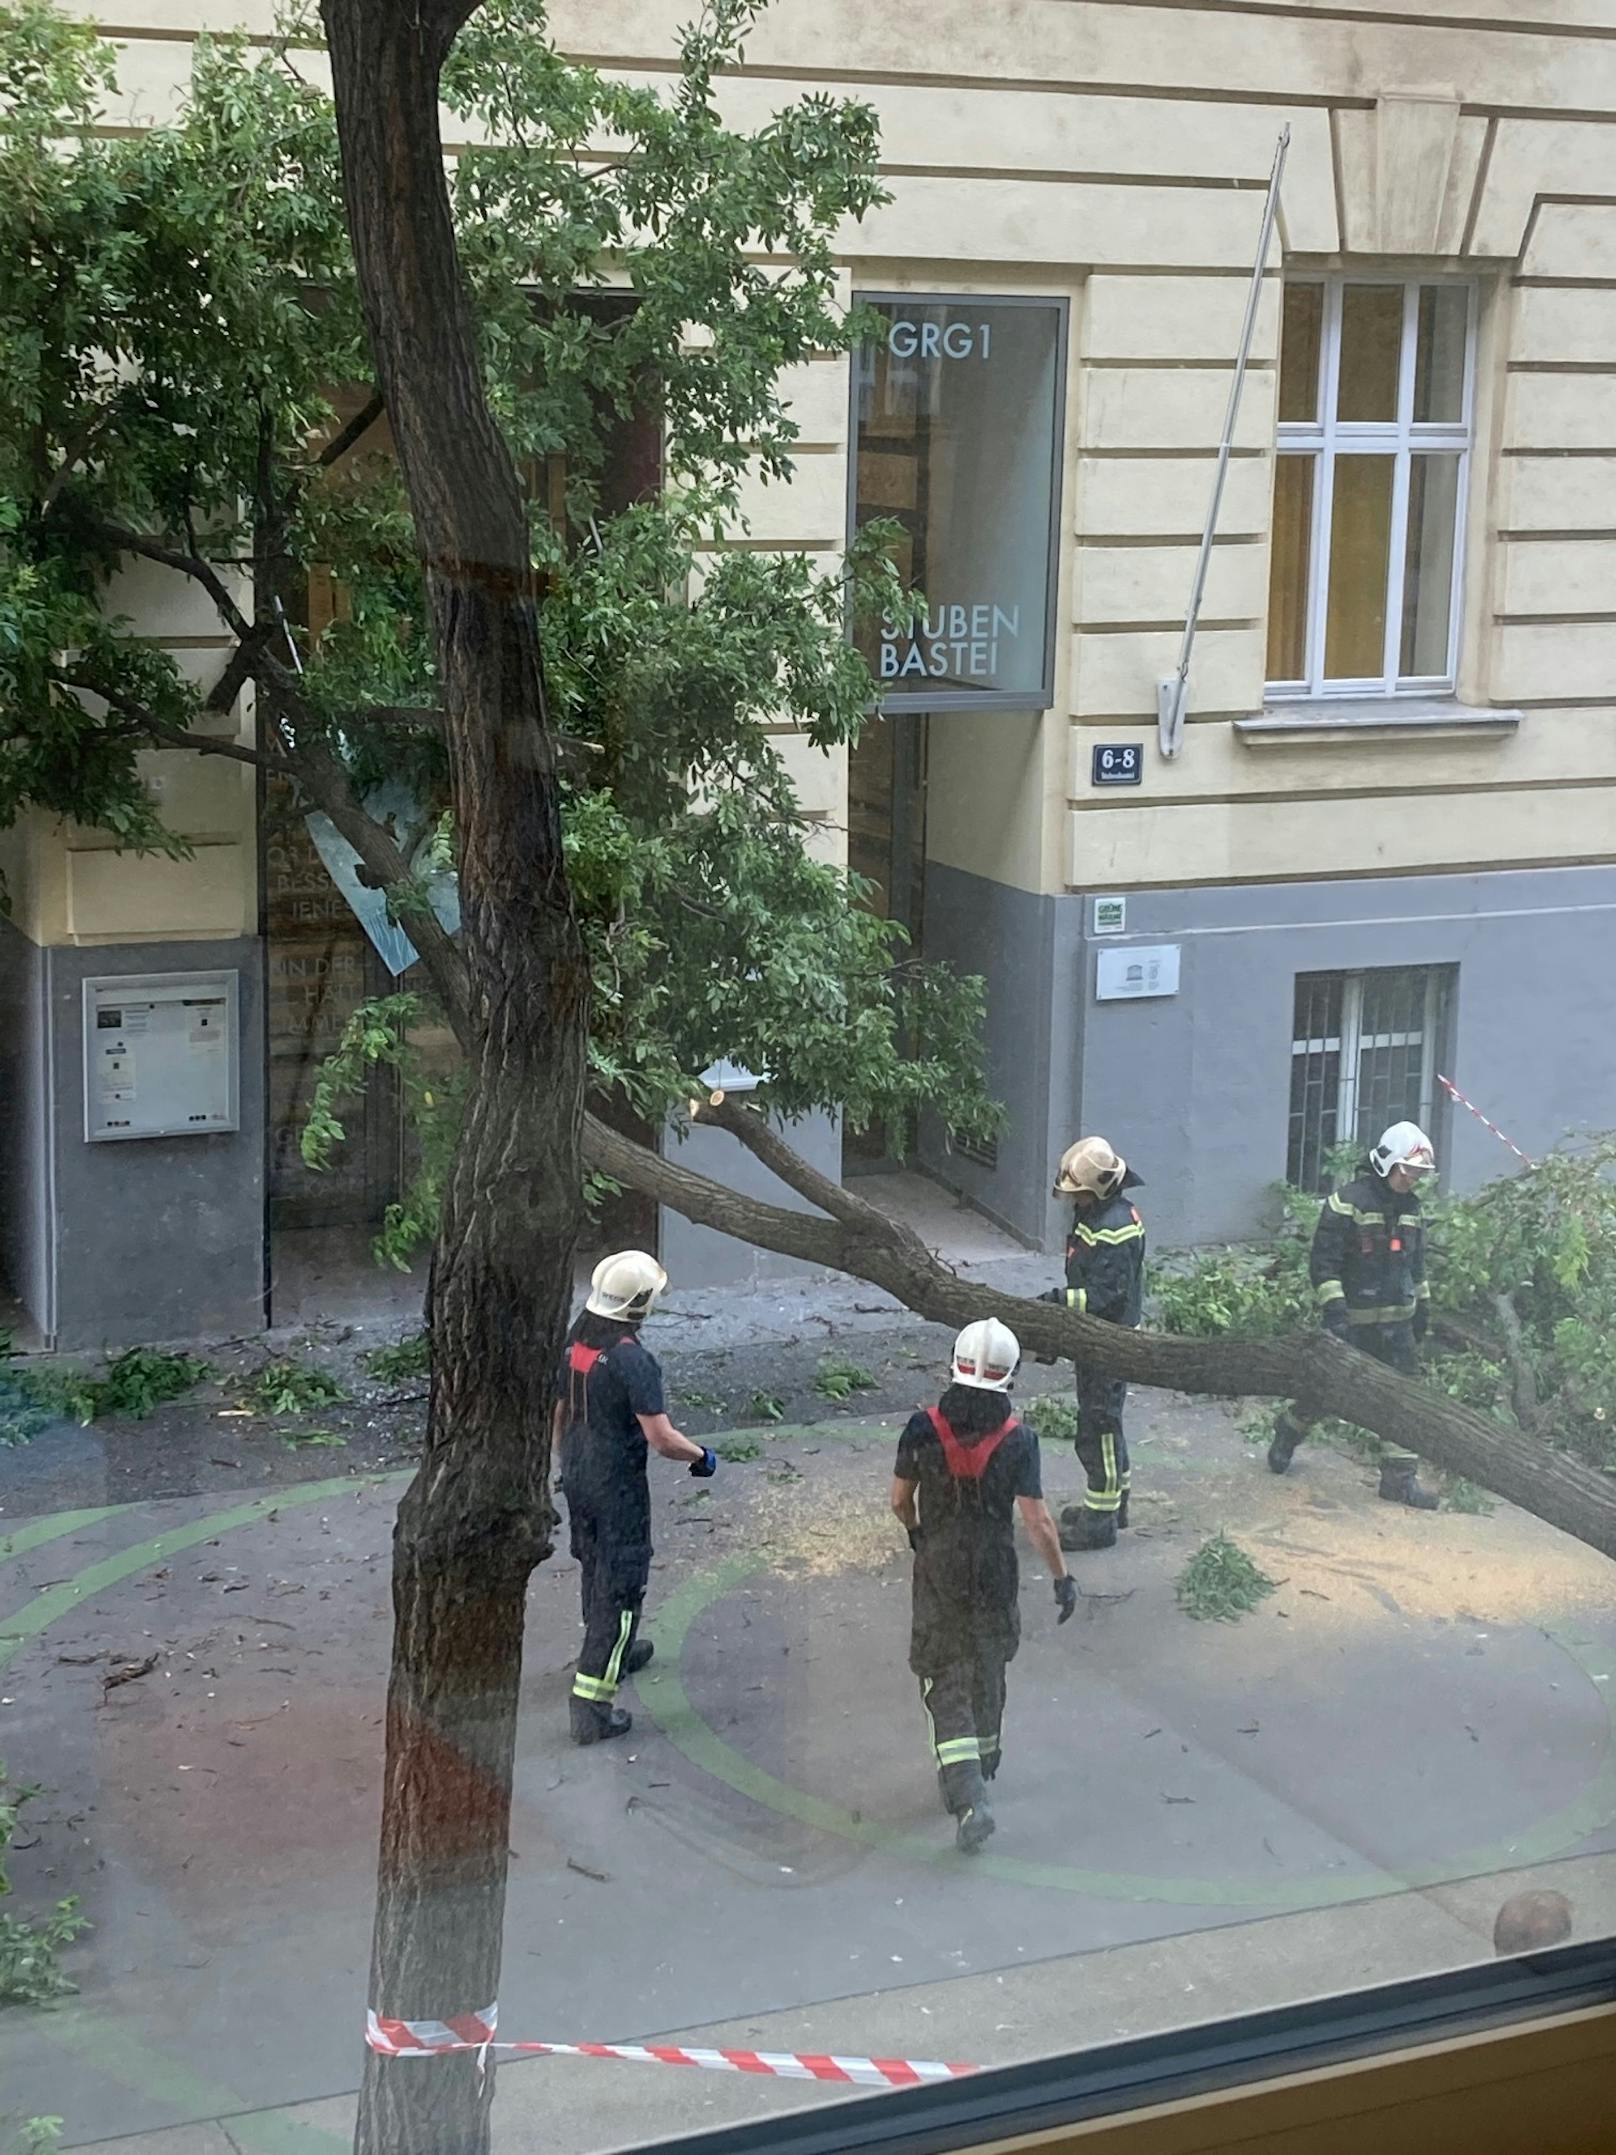 Offenbar aufgrund heftiger Sturmböen krachte ein Baum auf den Eingang des Gymnasiums Stubenbastei in der Wiener Innenstadt. Verletzt wurde zum Glück niemand.